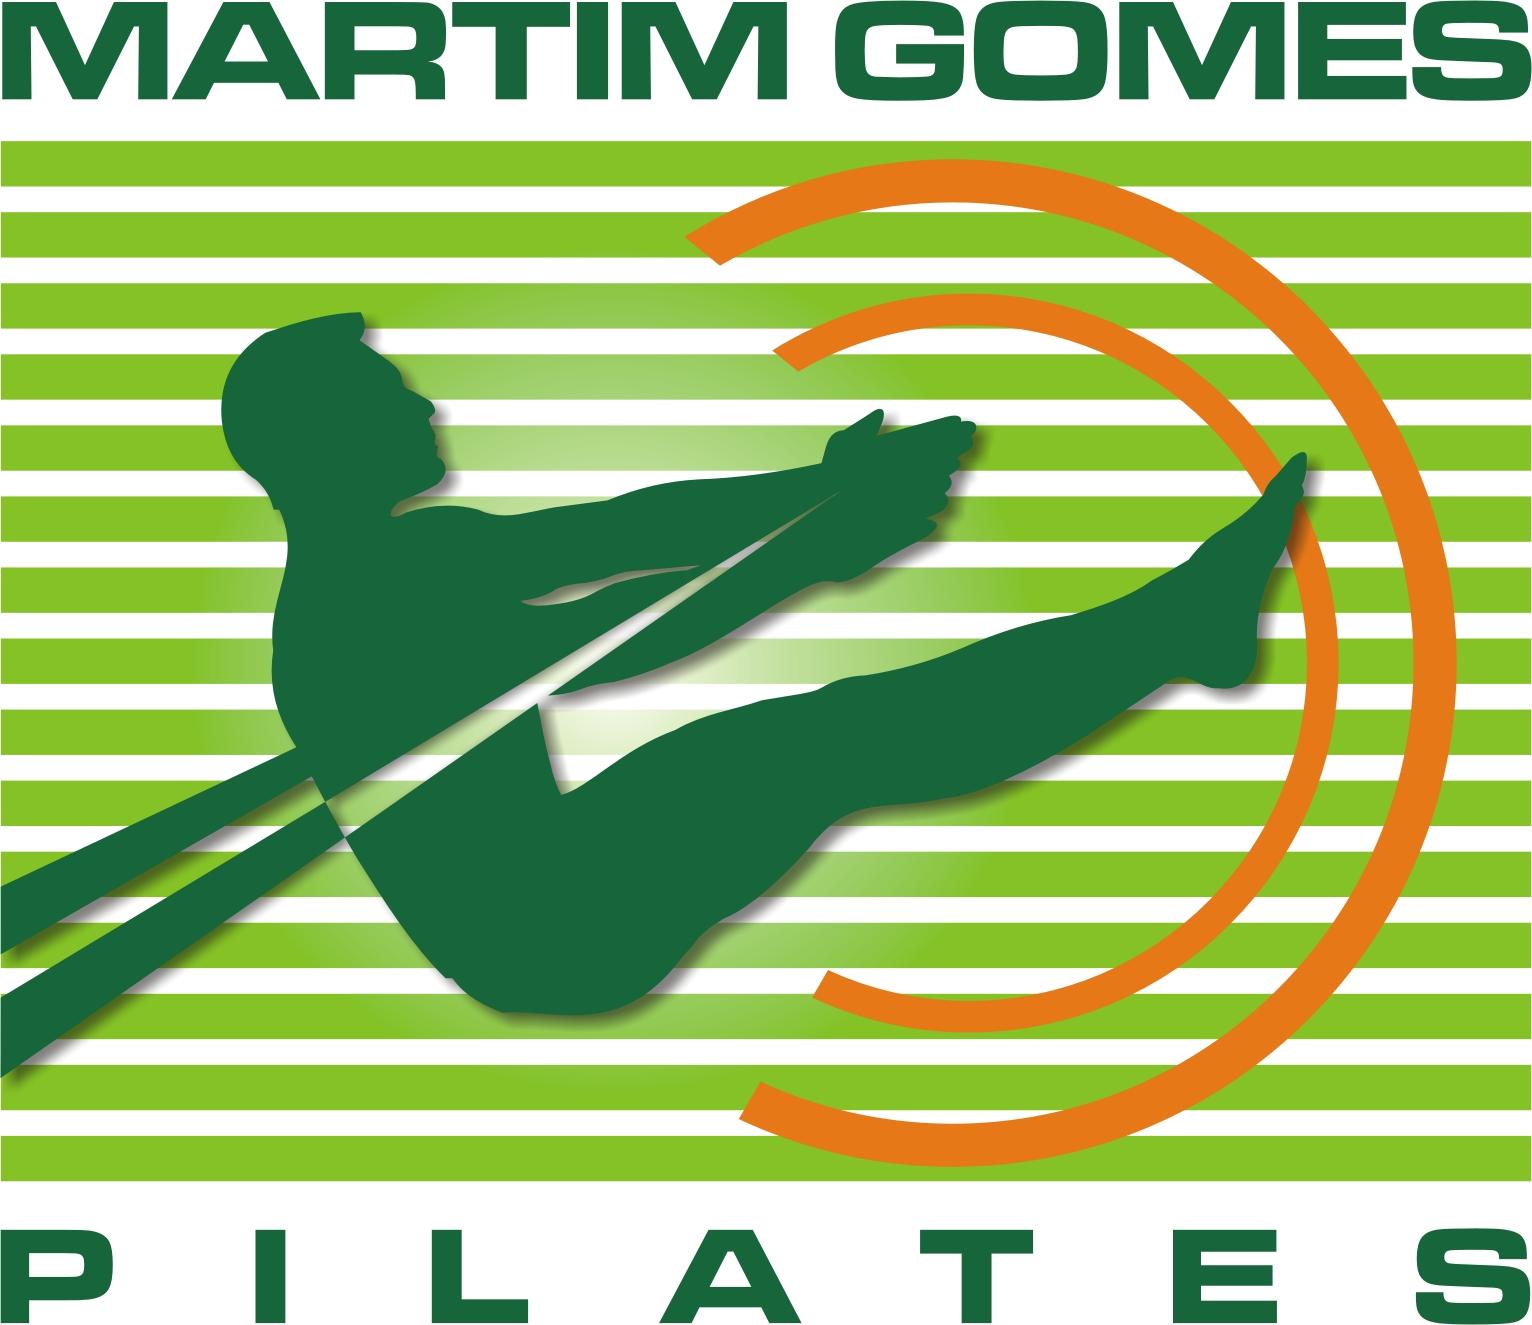 MARTIM GOMES PILATES